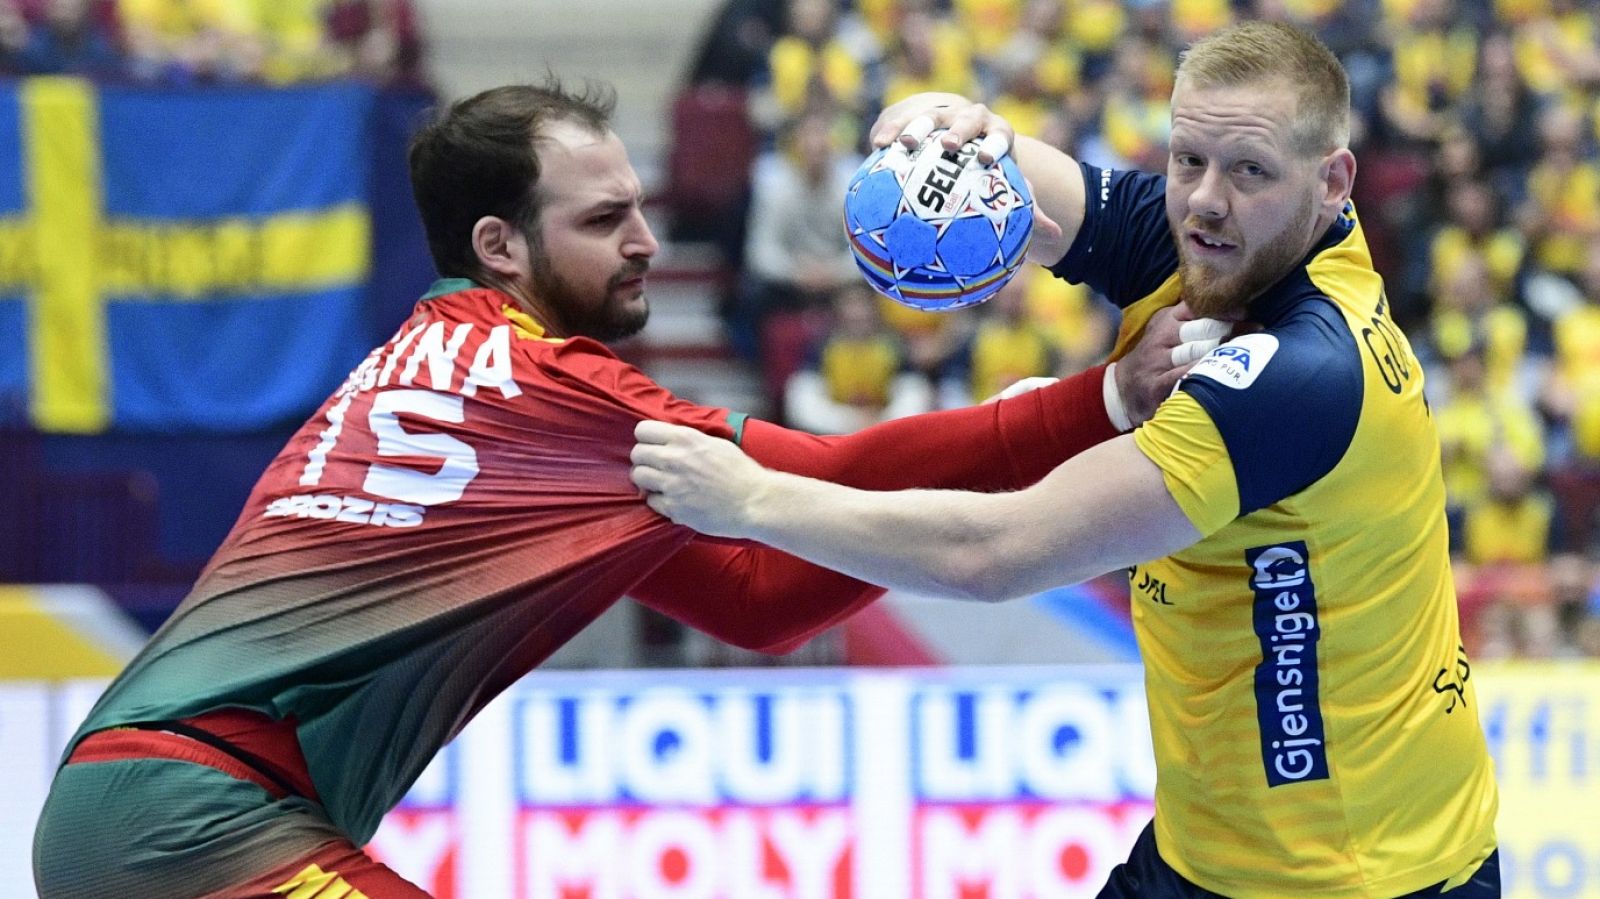 Balonmano - Campeonato de Europa Masculino: Portugal - Suecia - RTVE.es